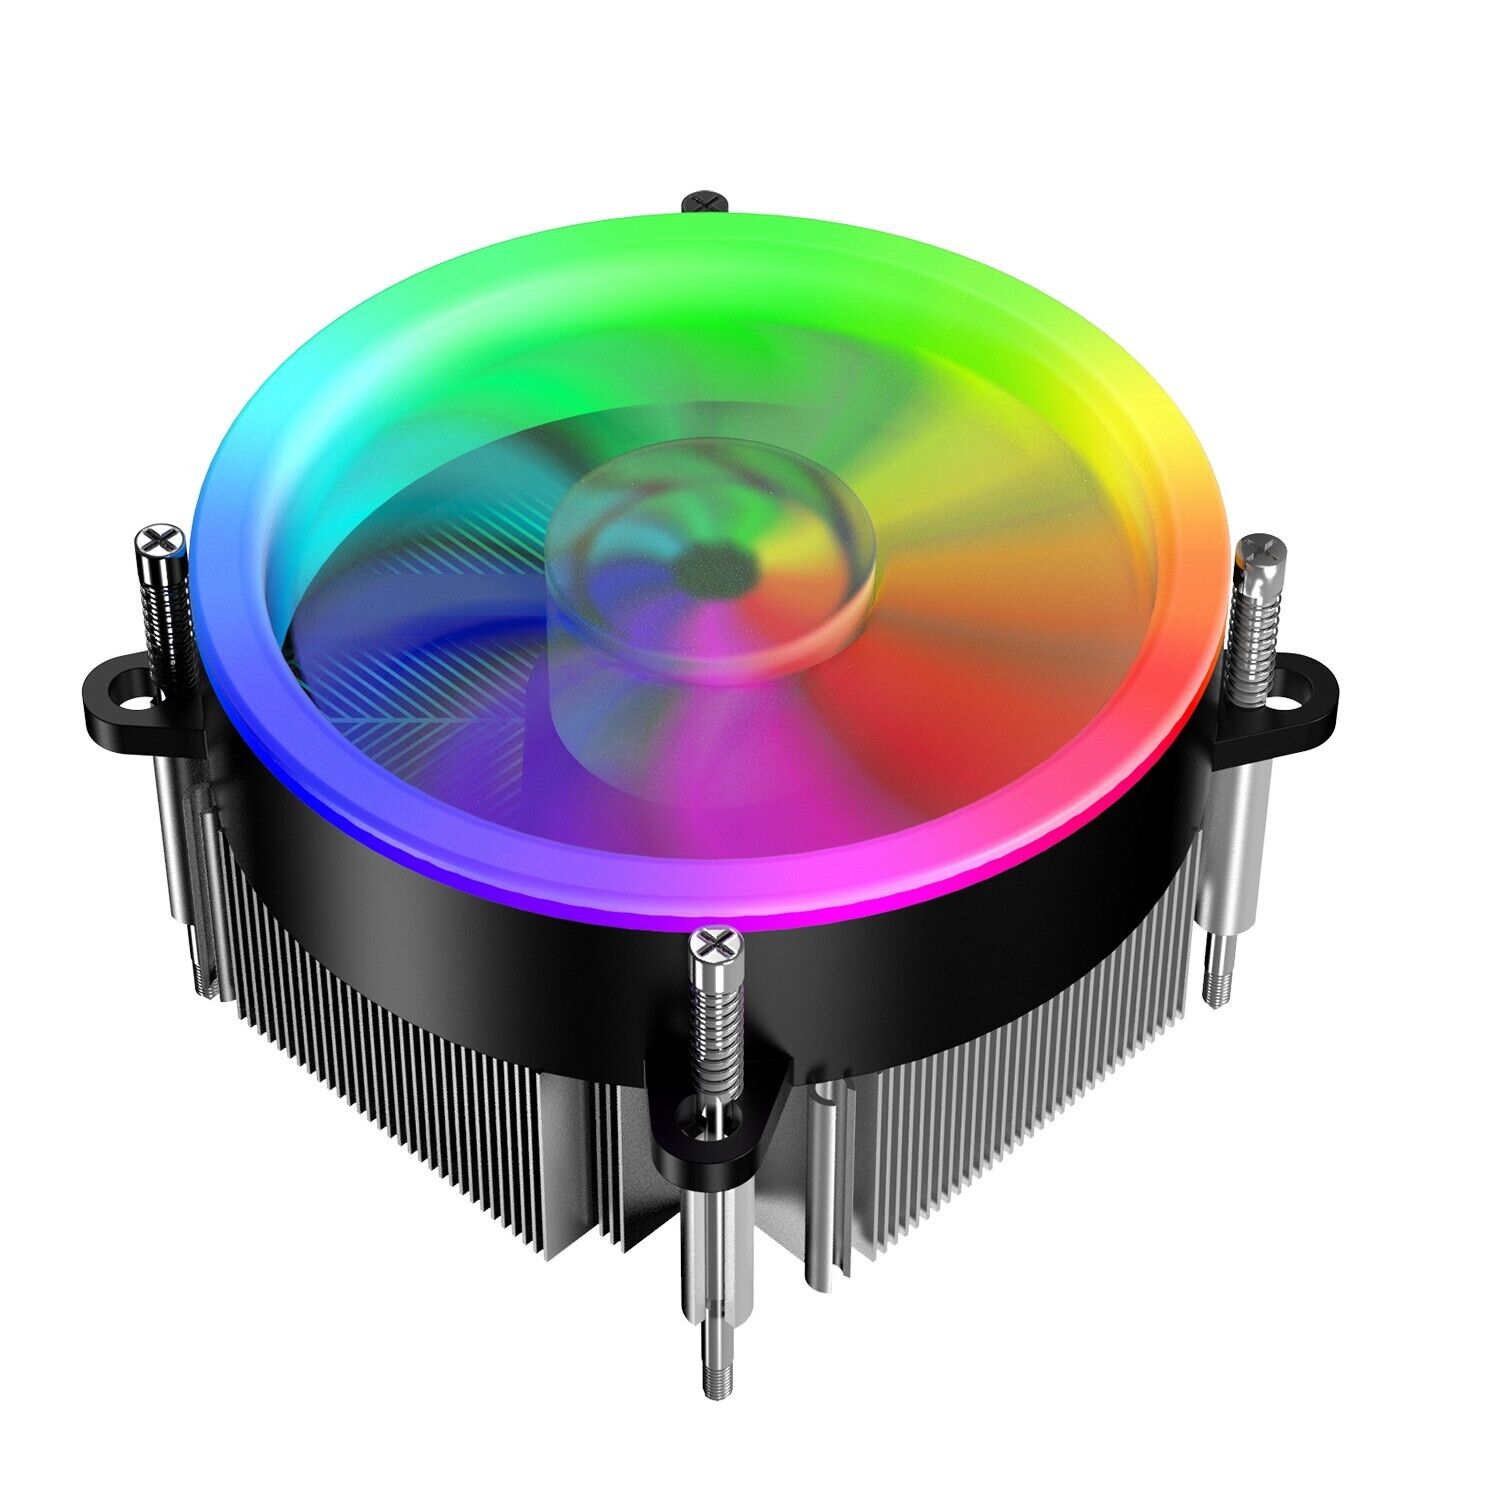 RGB CPU Heatsink Fan Cooler with Rainbow 90mm Fan For Intel LGA AMD AM3/AM4/AM5